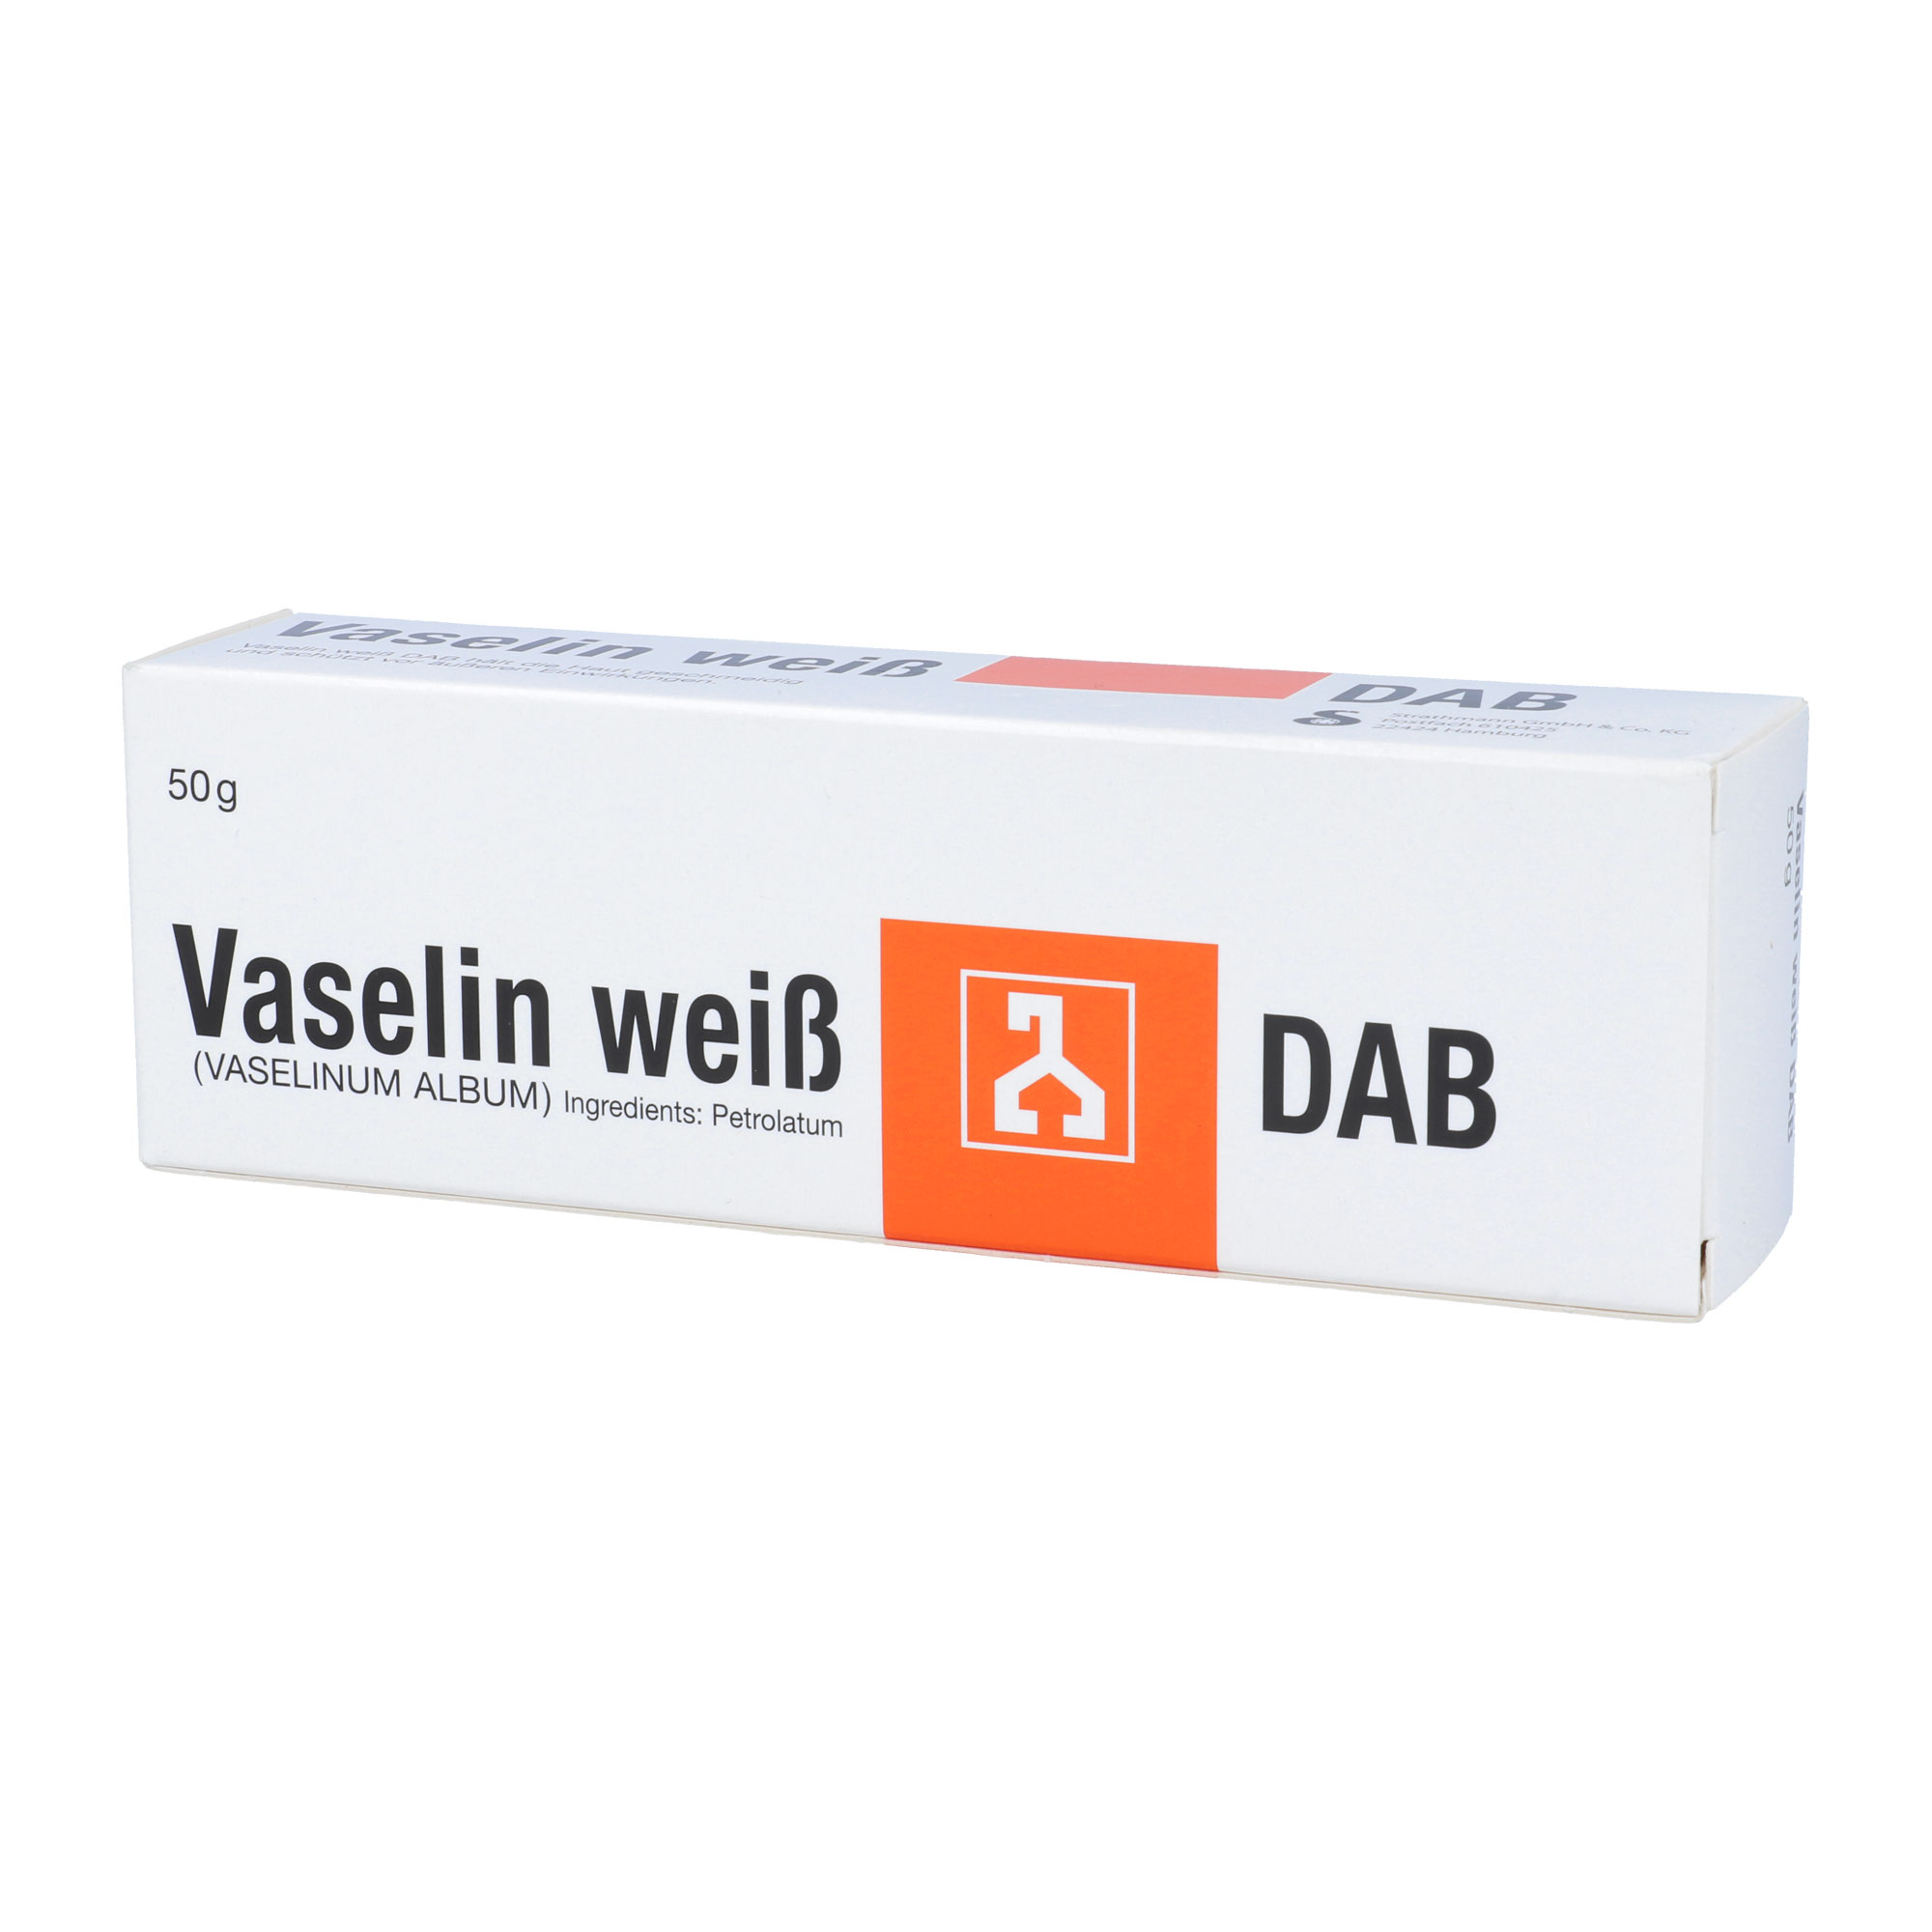 Vaseline weiß für geschmeidige Haut und zum Schutz vor äußeren Einwirkungen.